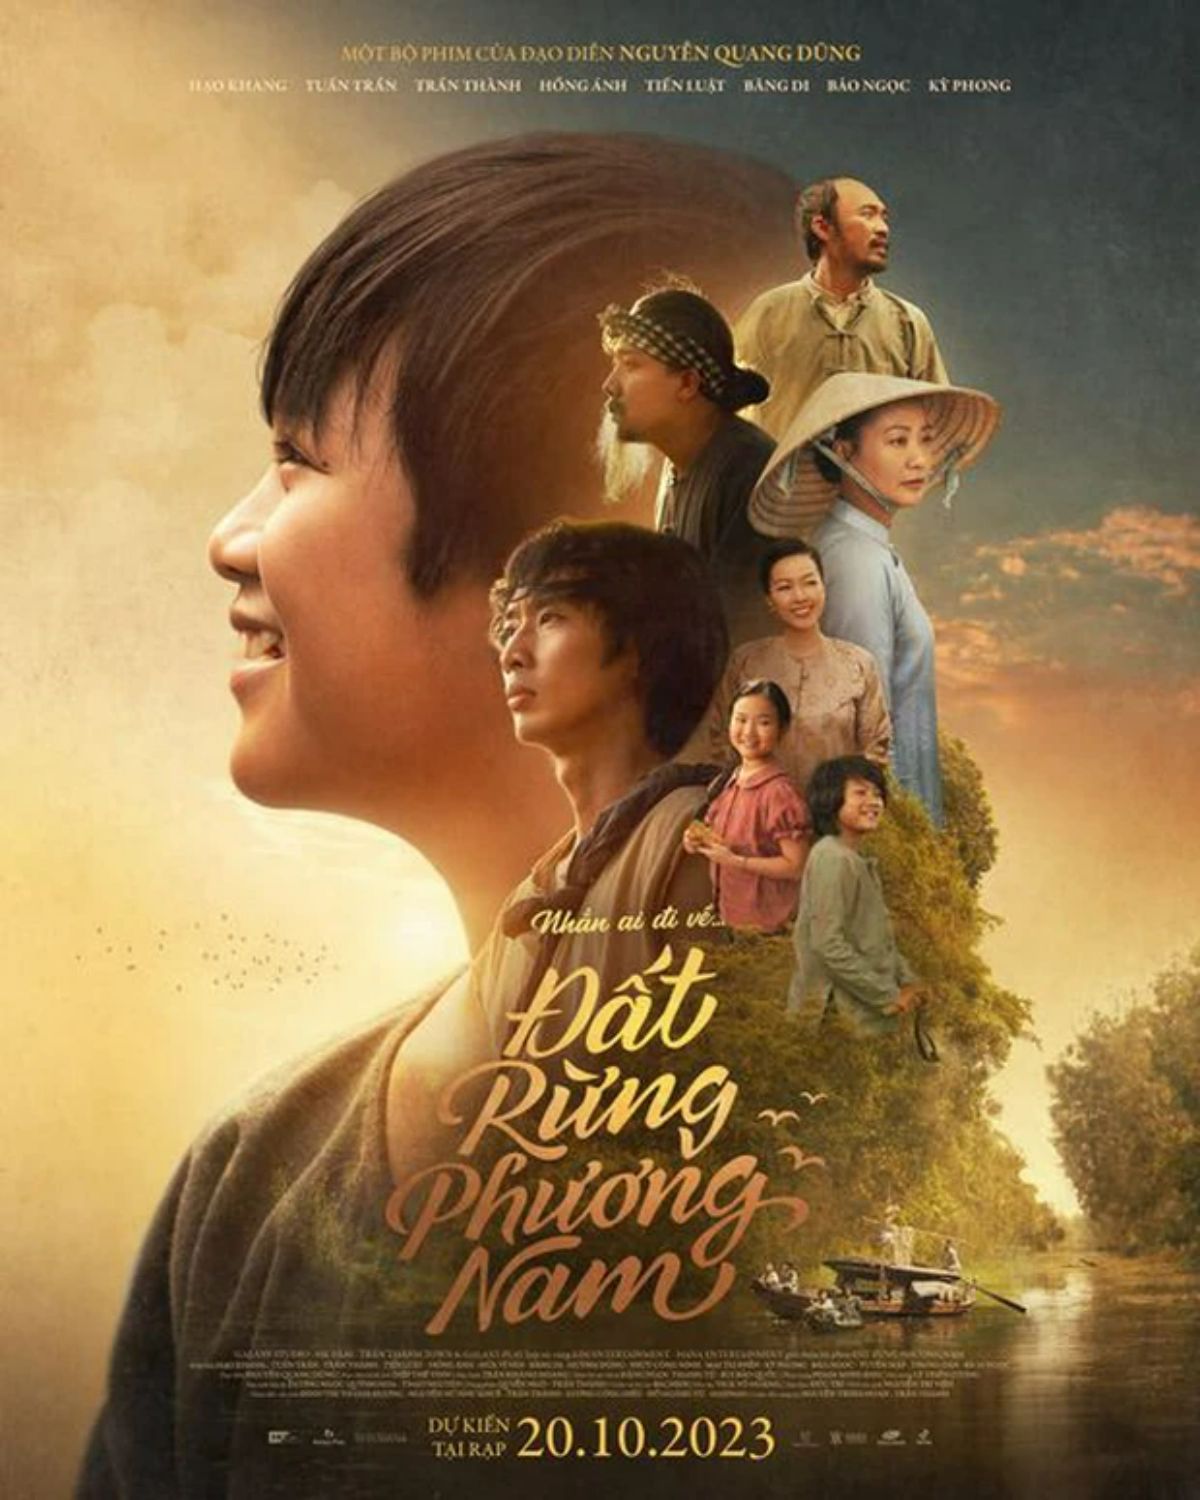 Ngày 19/9, ekip bộ phim điện ảnh Đất Rừng Phương Nam đã tung poster chính thức với đông đảo các nhân vật chính đều xuất hiện